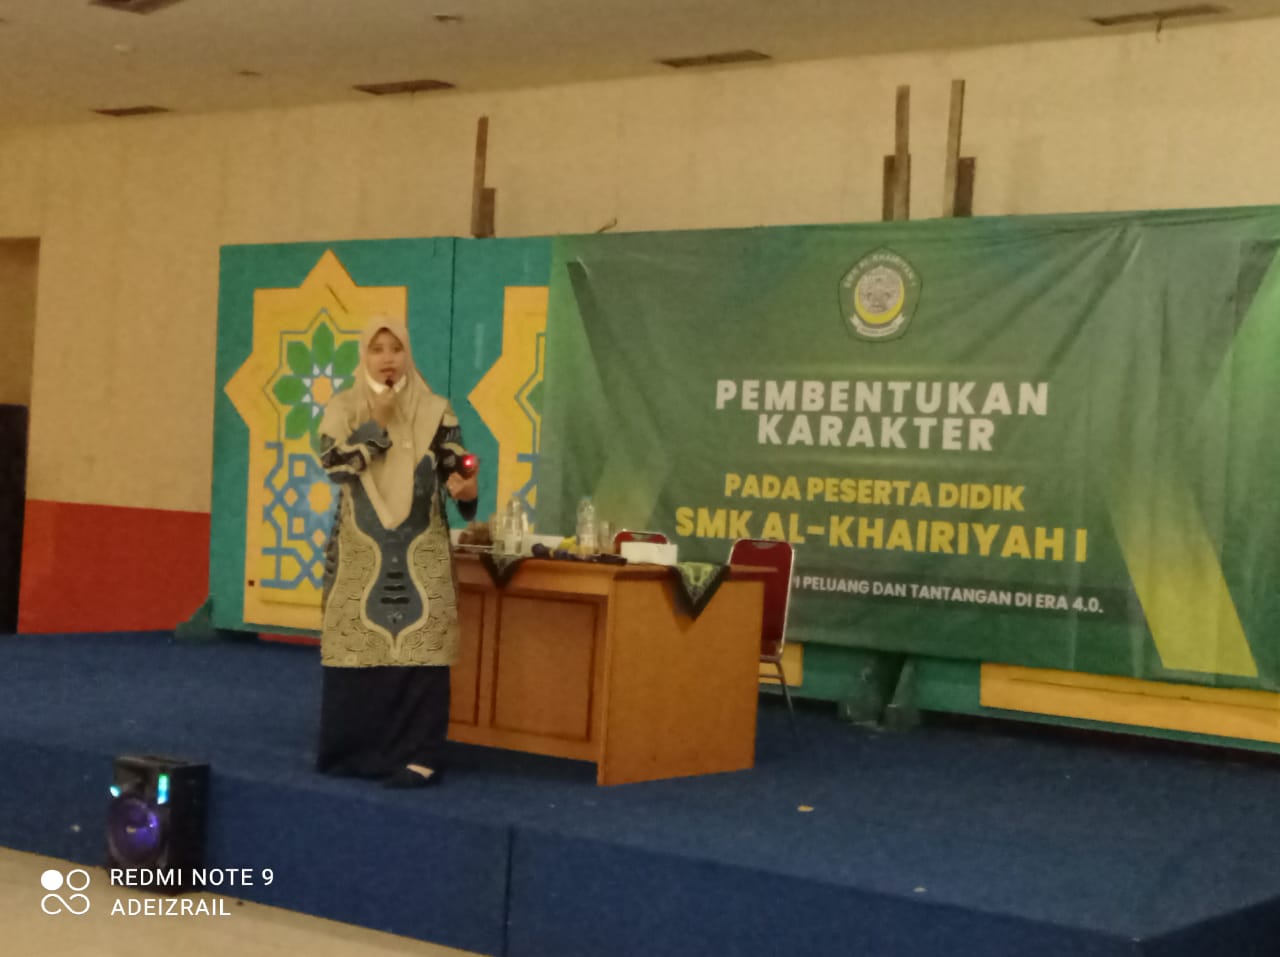 Pembentukan Karakter DI Stadium General  Islamic Center Jakarta Utara